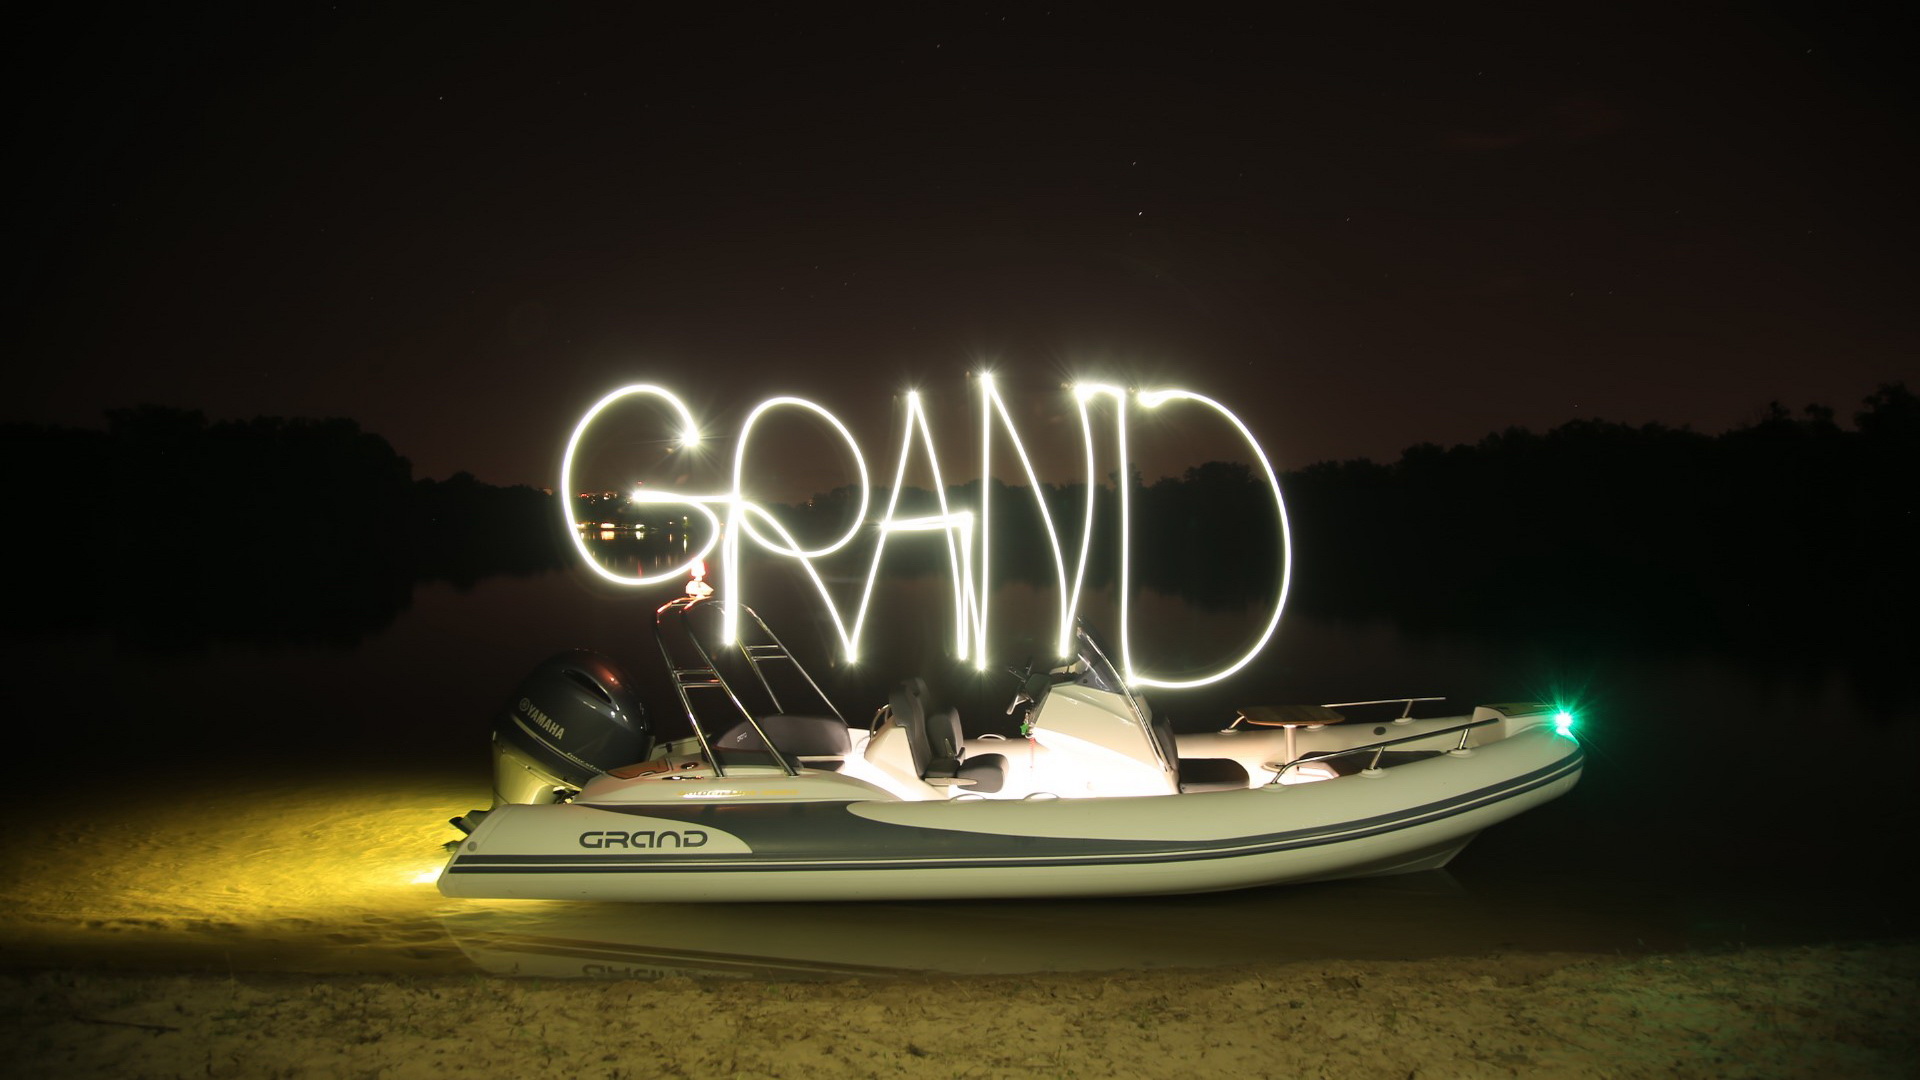 Надувная лодка с жестким дном GRAND Golden Line G580LF, Надувная лодка GRAND Golden Line G580LF, GRAND Golden Line G580LF, GRAND Golden Line G580, GRAND G580LF, GRAND G580, Надувная лодка GRAND, Надувная лодка ГРАНД, RIB лодка, стеклопластиковая лодка с надувными баллонами, Надувная лодка с жестким дном, RIB, Rigid Inflatable Boats